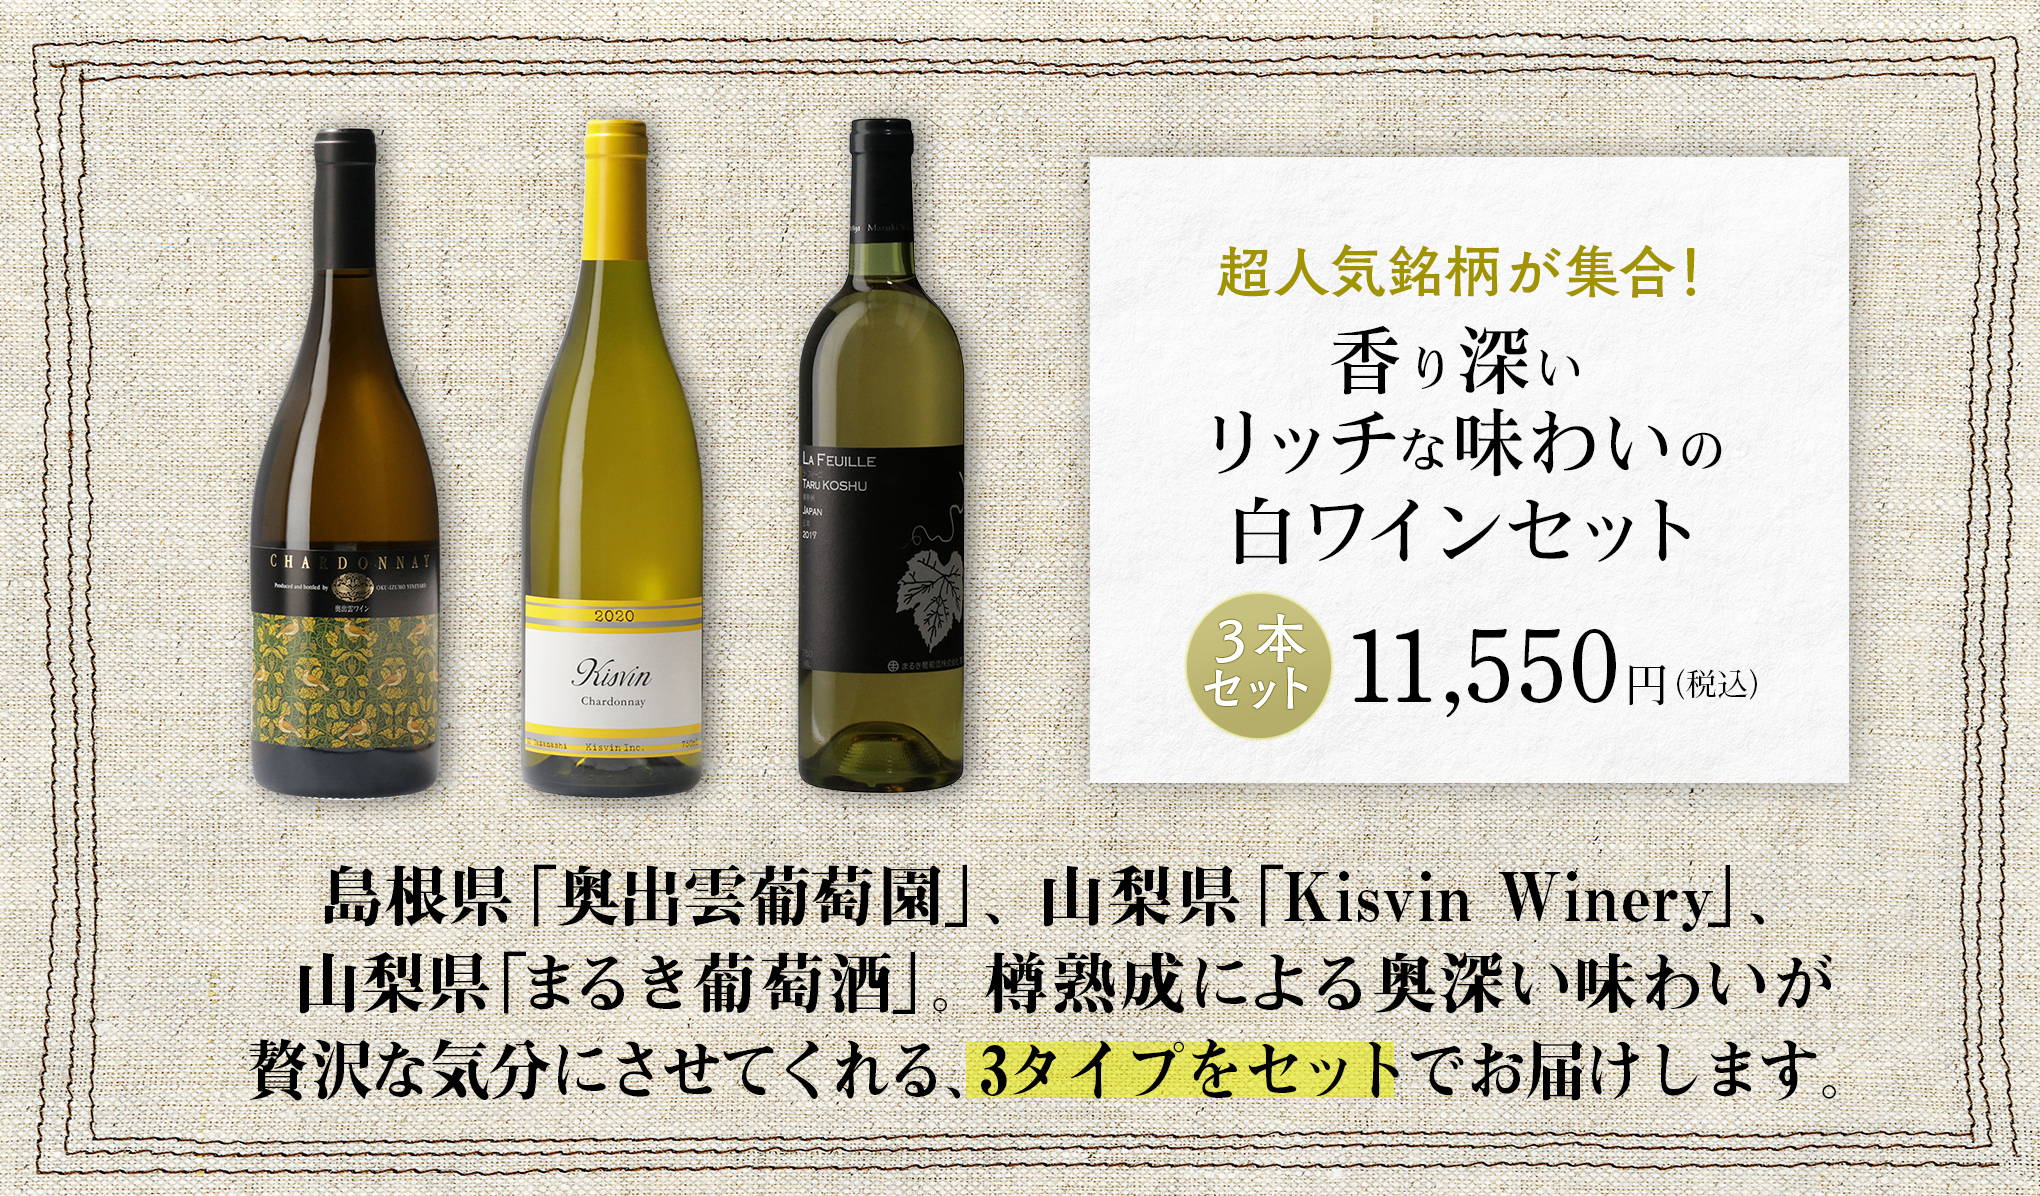 日本ワインを知り尽くしたバイヤーが選ぶ、『wa-syu』限定セット vol.6